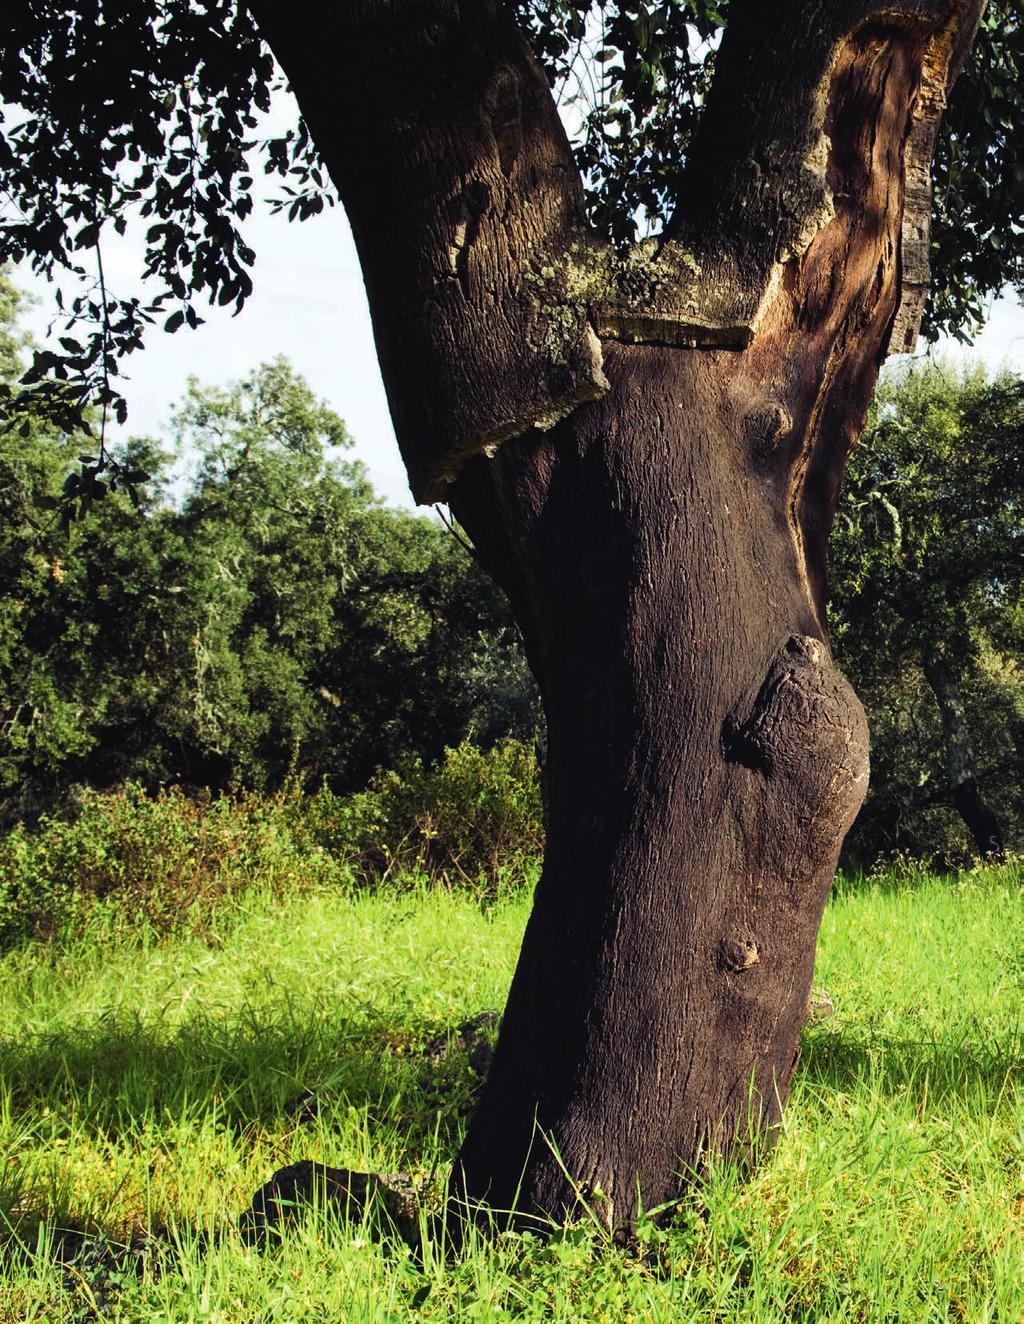 Acessórios Cortiça, uma matéria-prima excecional A cortiça é a casca exterior do sobreiro (Quercus Suber L.), o tecido vegetal 100% natural que reveste o tronco e os ramos.